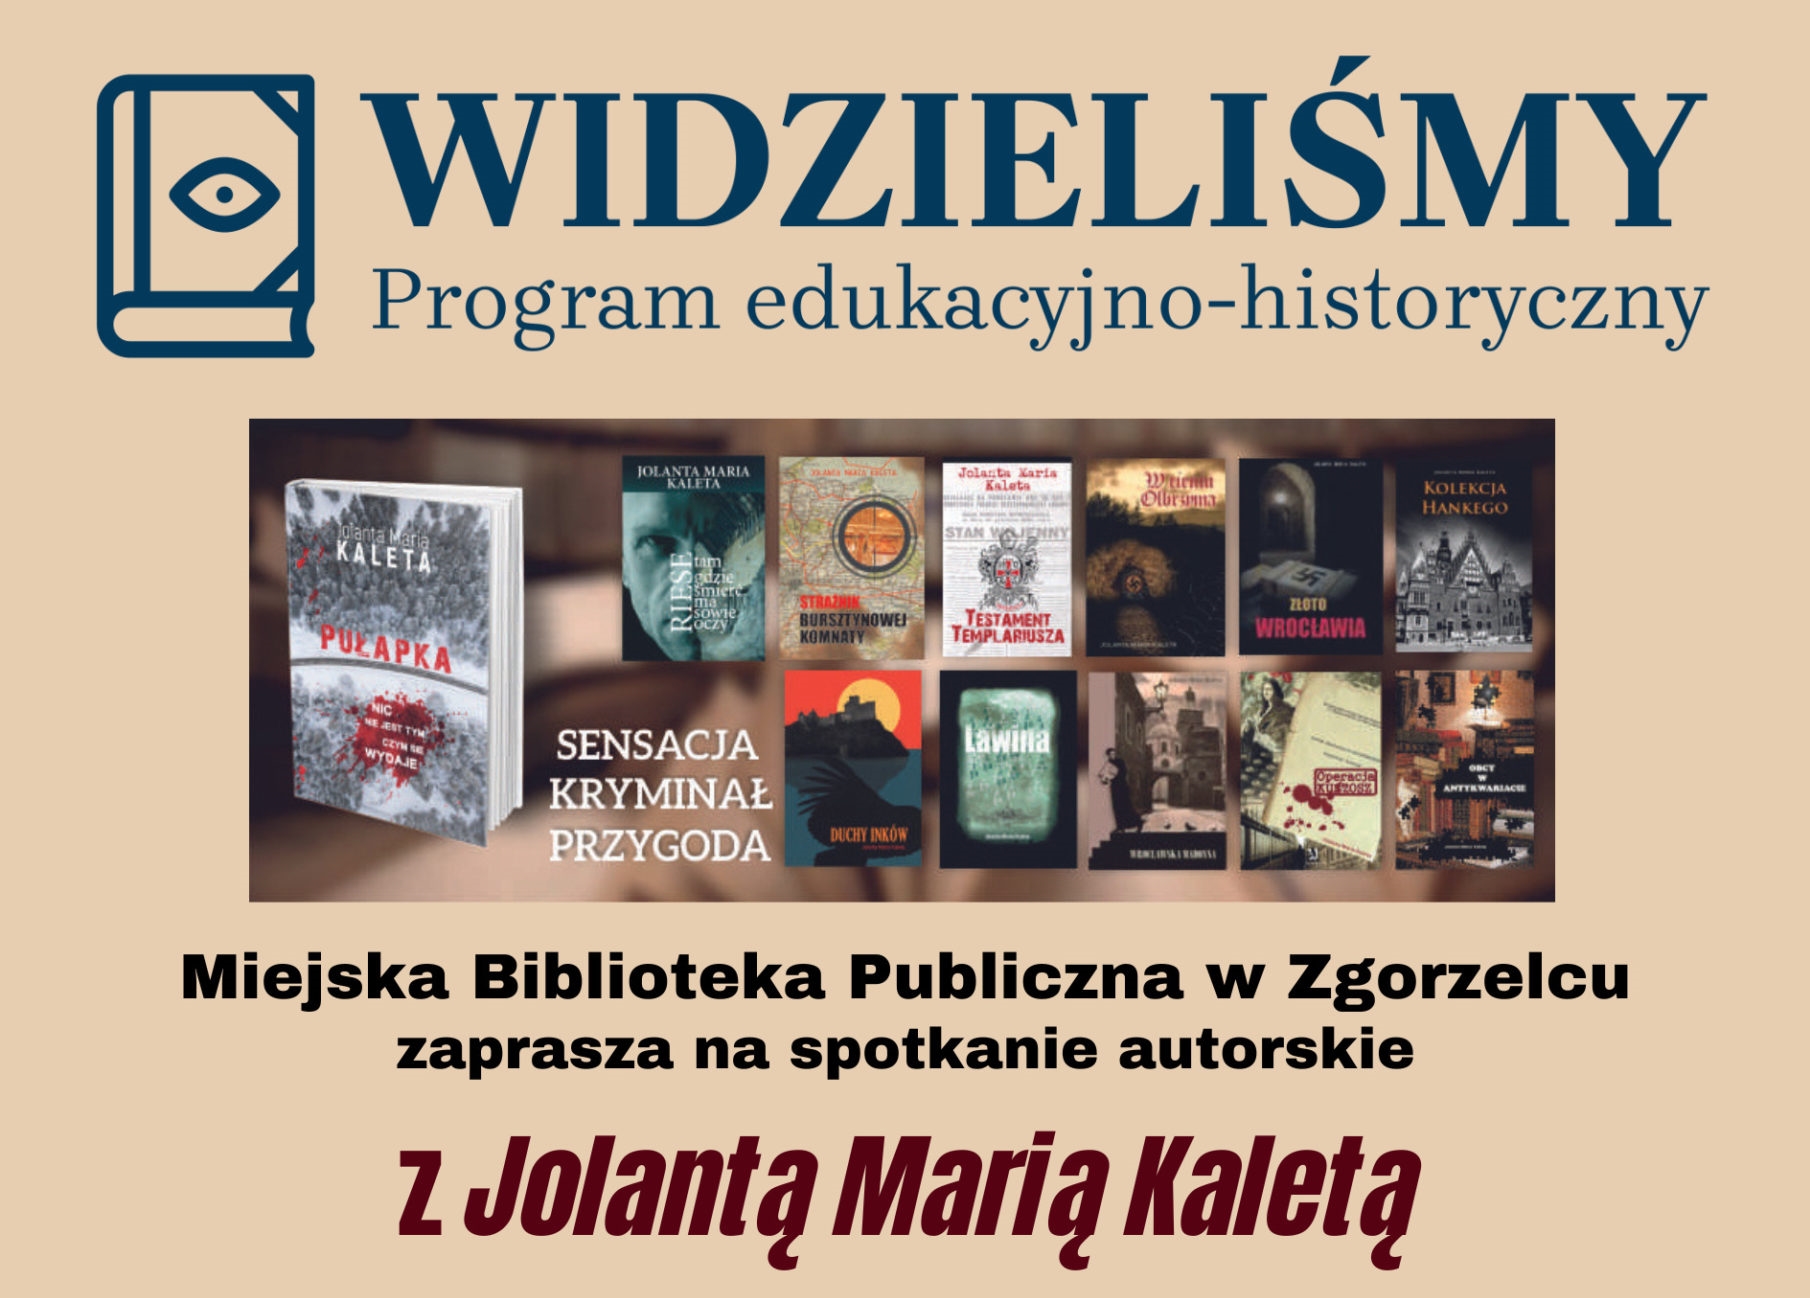 You are currently viewing Spotkanie autorskie z Jolantą Marią Kaletą